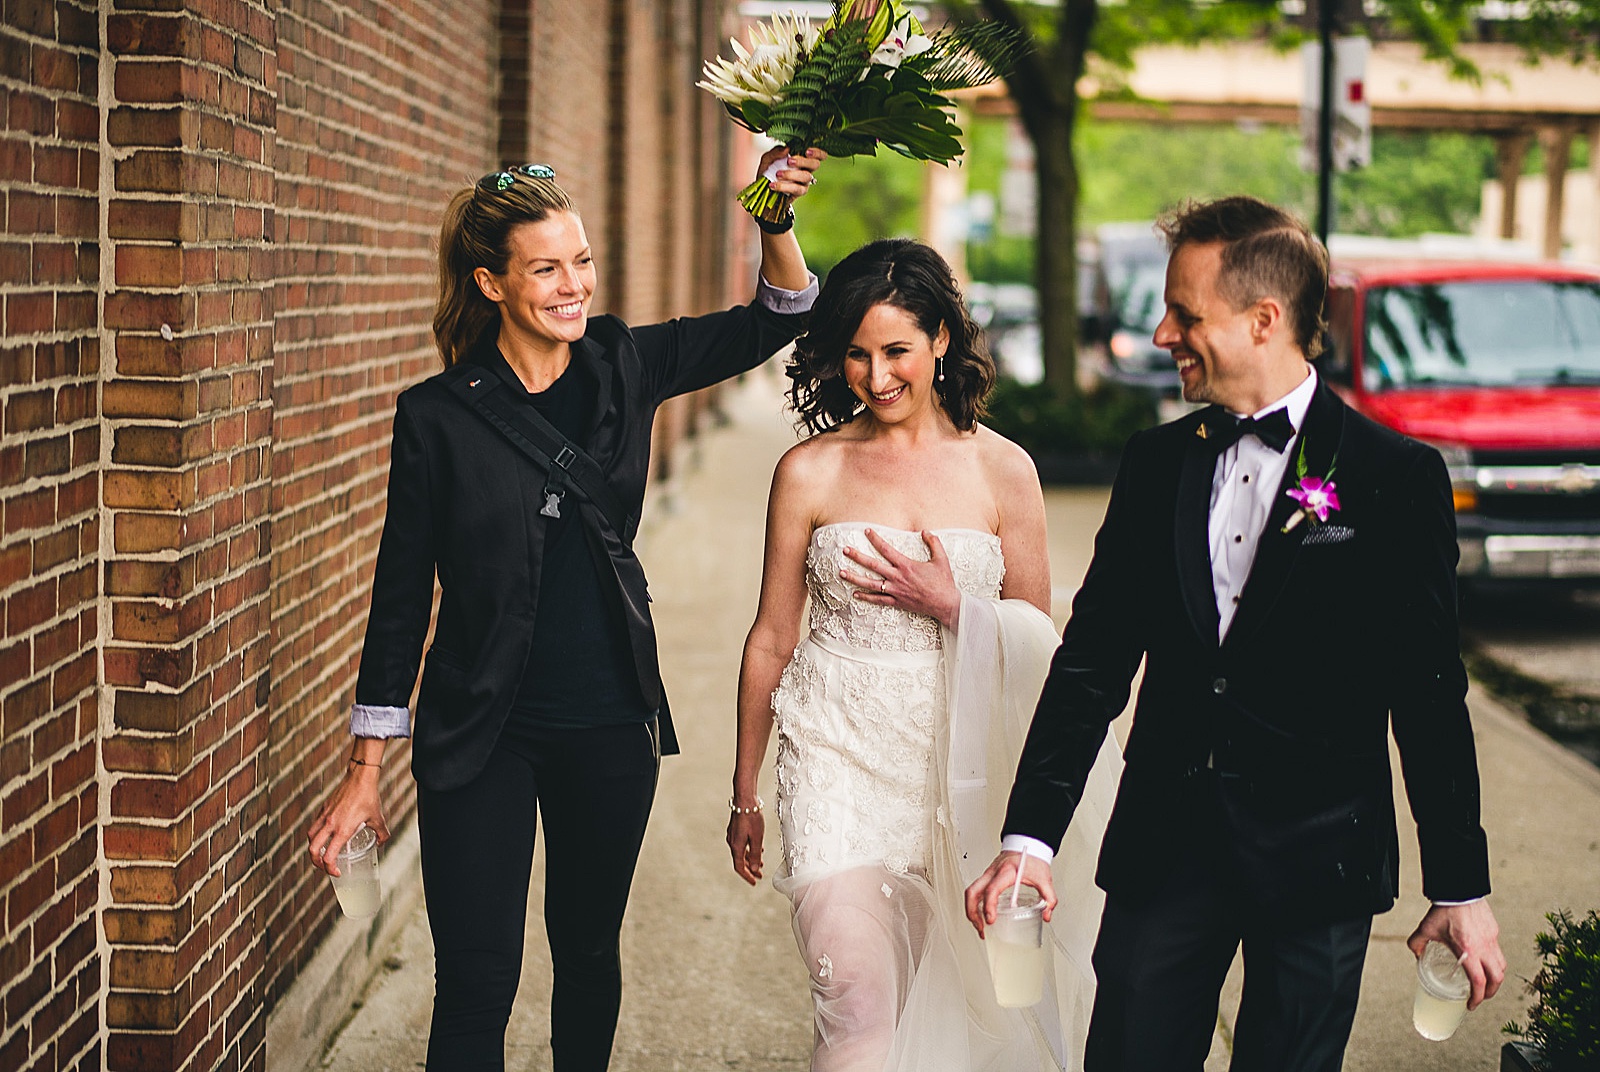 29 photographer covering bride during rain - Chicago Illuminating Company Wedding // Samantha + Jeremy